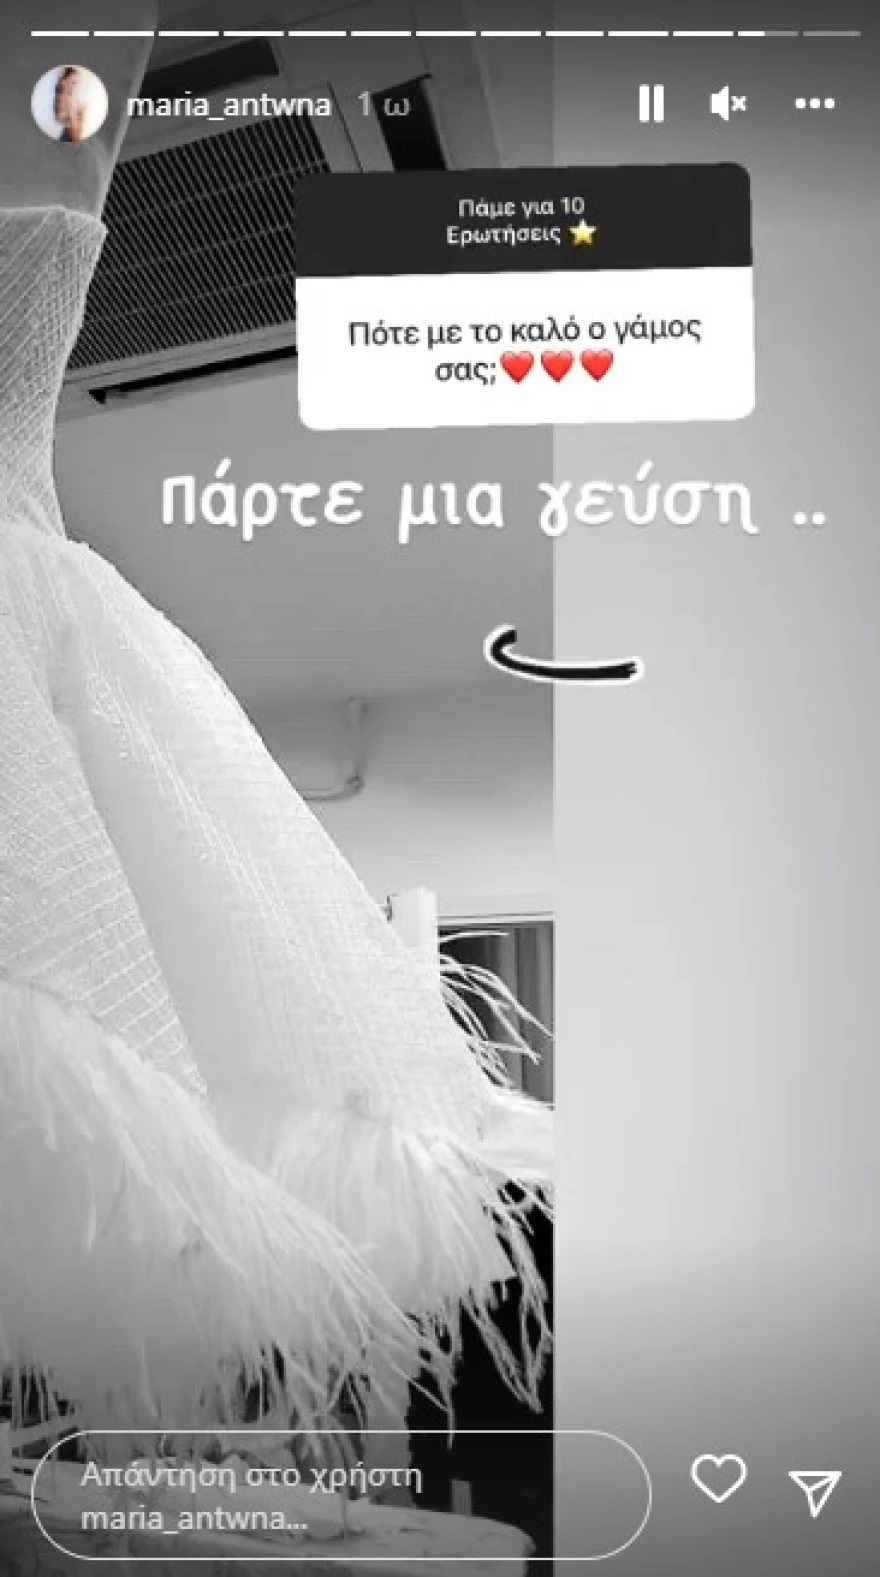 Μαρία Αντωνά: Δείχνει το νυφικό της, λίγες μέρες πριν το γάμο της με τον Άρη Σοϊλέδη (εικόνα)